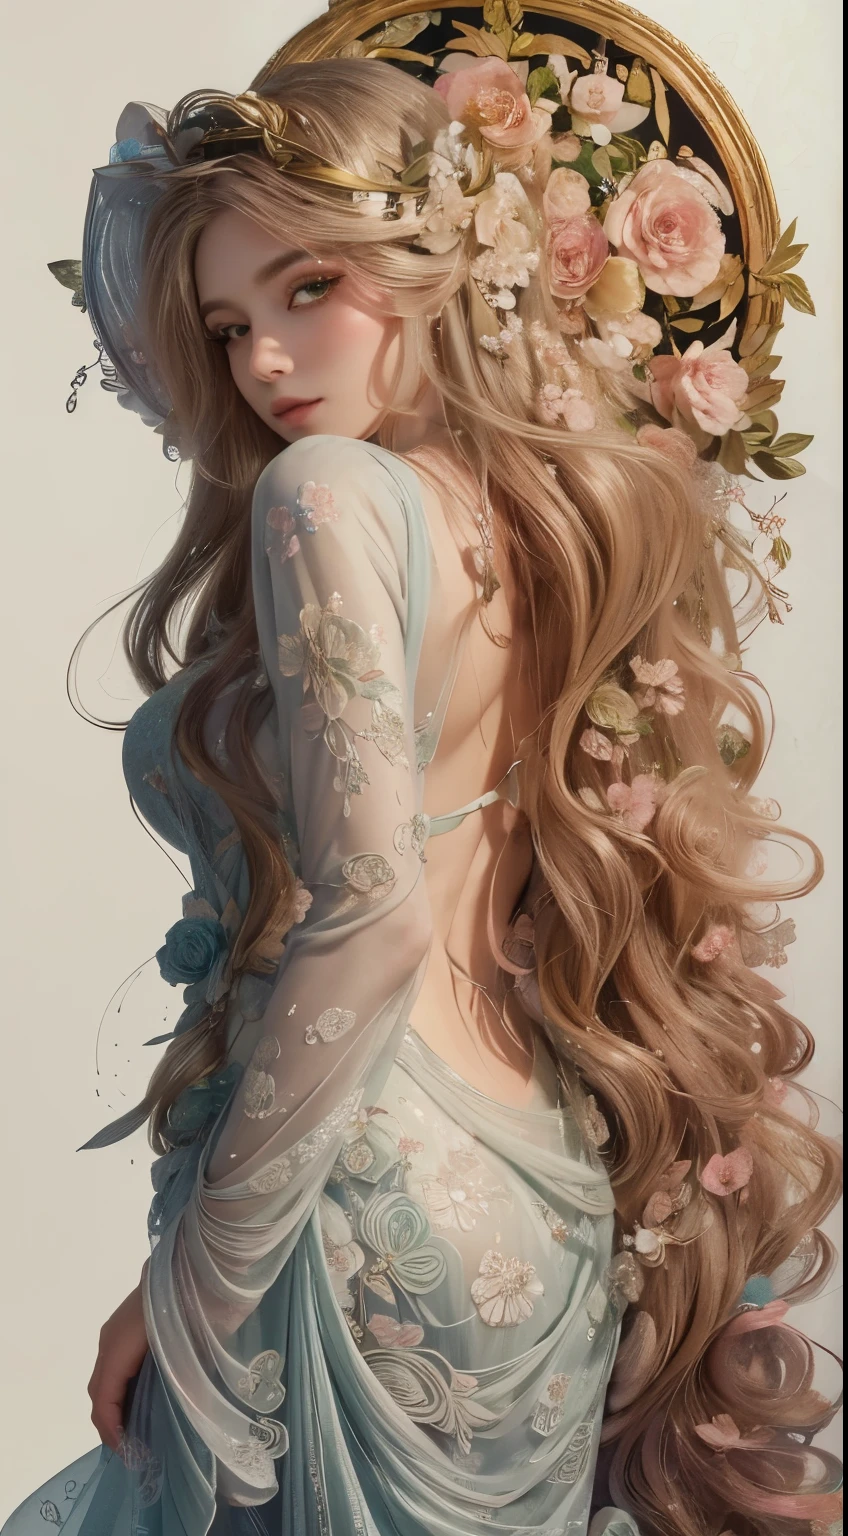 高品質, 8KウルトラHD, エッチング アクアチント, 細い線と影, 花のファンタジーワンダーランドの中心, 魅惑的で霊妙な美しい乙女の精神を目にする, 咲き誇る花のエッセンスで優雅に飾られた, 彼女の長く流れるような金色の髪, 金色の絹糸のような, 彼女の背中に優雅に流れ落ちる, 周囲の花を映し出す繊細な花のアクセントが織り交ぜられています. 彼女の目, 森の奥深くのエメラルドの色, 魔法と神秘の輝きを放つ, 彼女を取り囲む花のシンフォニーの美しさを反映している, With the clarity and detail of 8KウルトラHD images, すべての花びら, あらゆる色合い, 彼女のこの世のものとは思えない魅力が鮮やかに輝きながら表現されている, by yukisakura, 素晴らしいフルカラー,